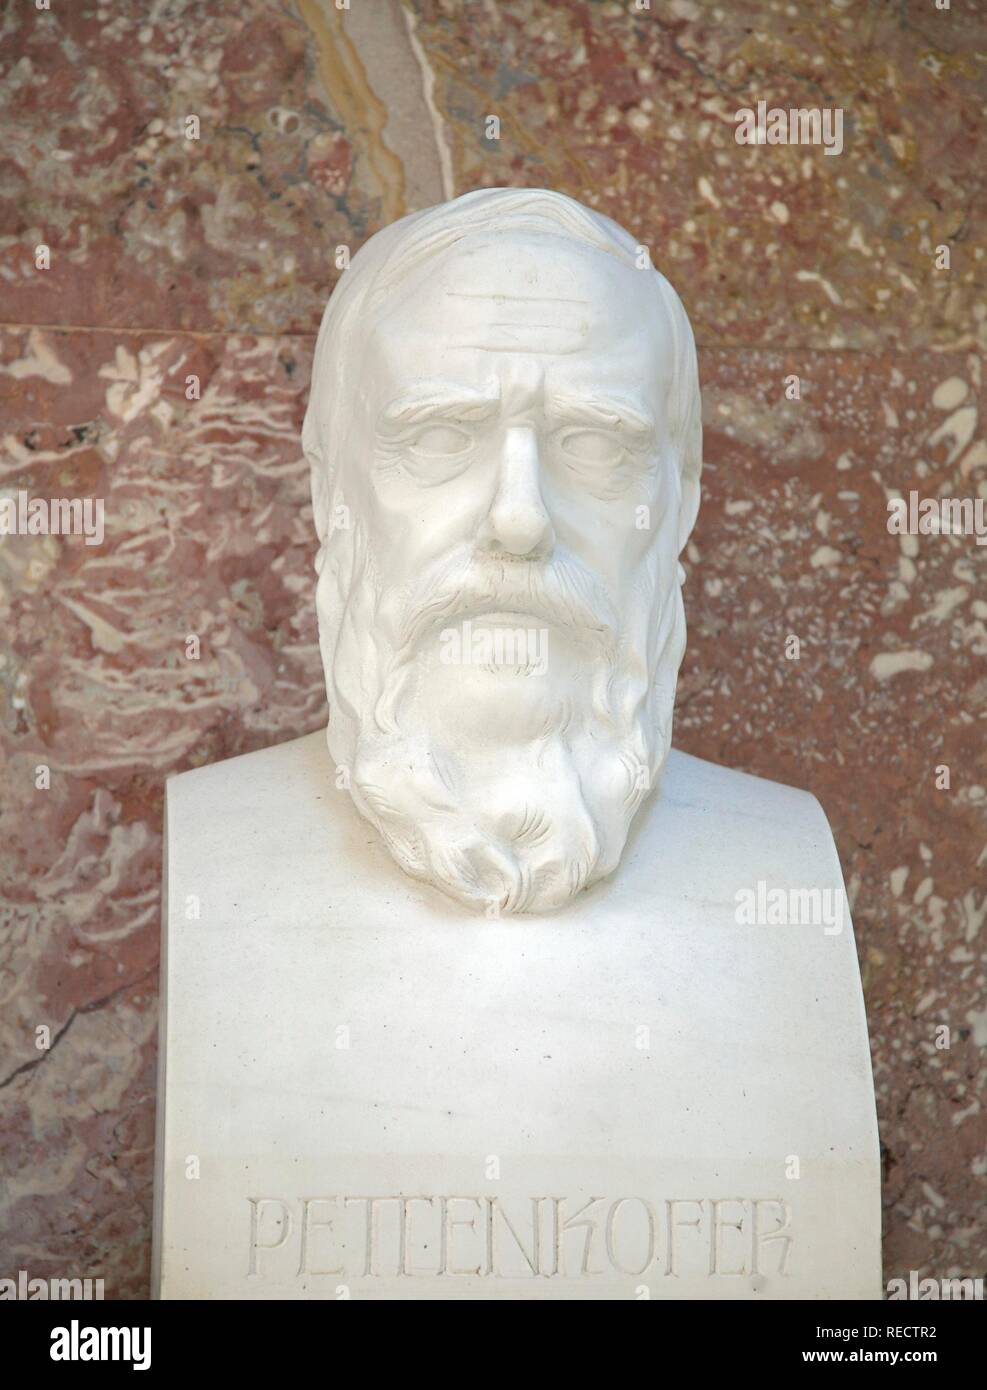 Bust of Max von Pettenkofer, German chemist and hygienist Stock Photo